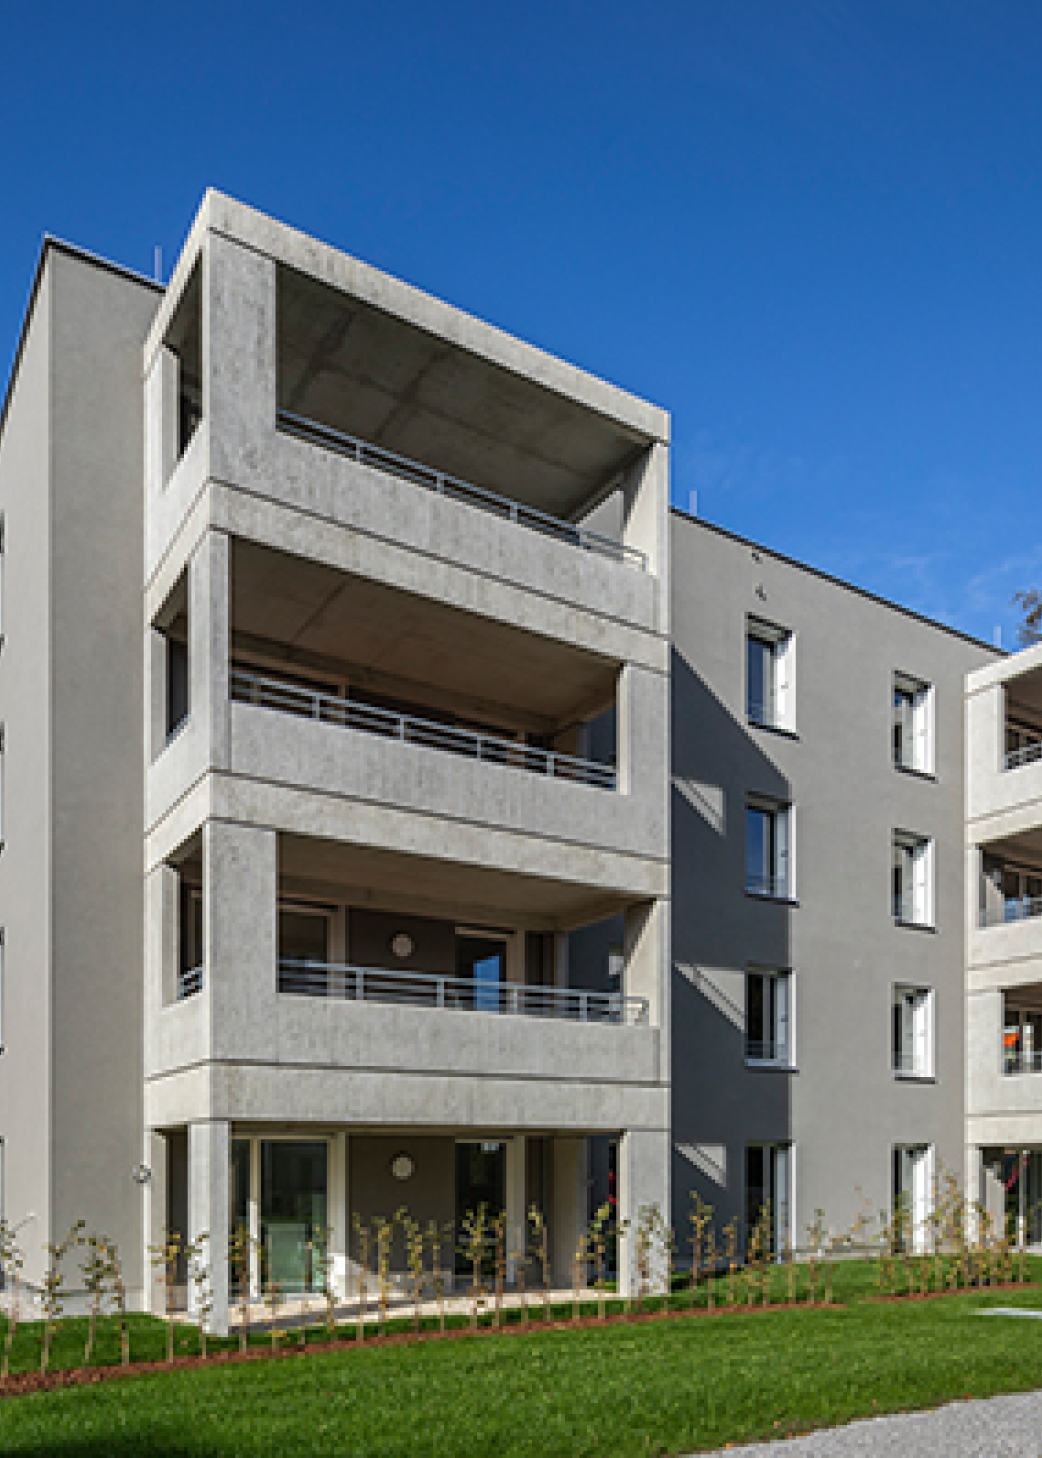 Beide Gebäudeblöcke bieten Platz für 33 Wohneinheiten mit Grundflächen von 54 bis 89 Quadratmeter.